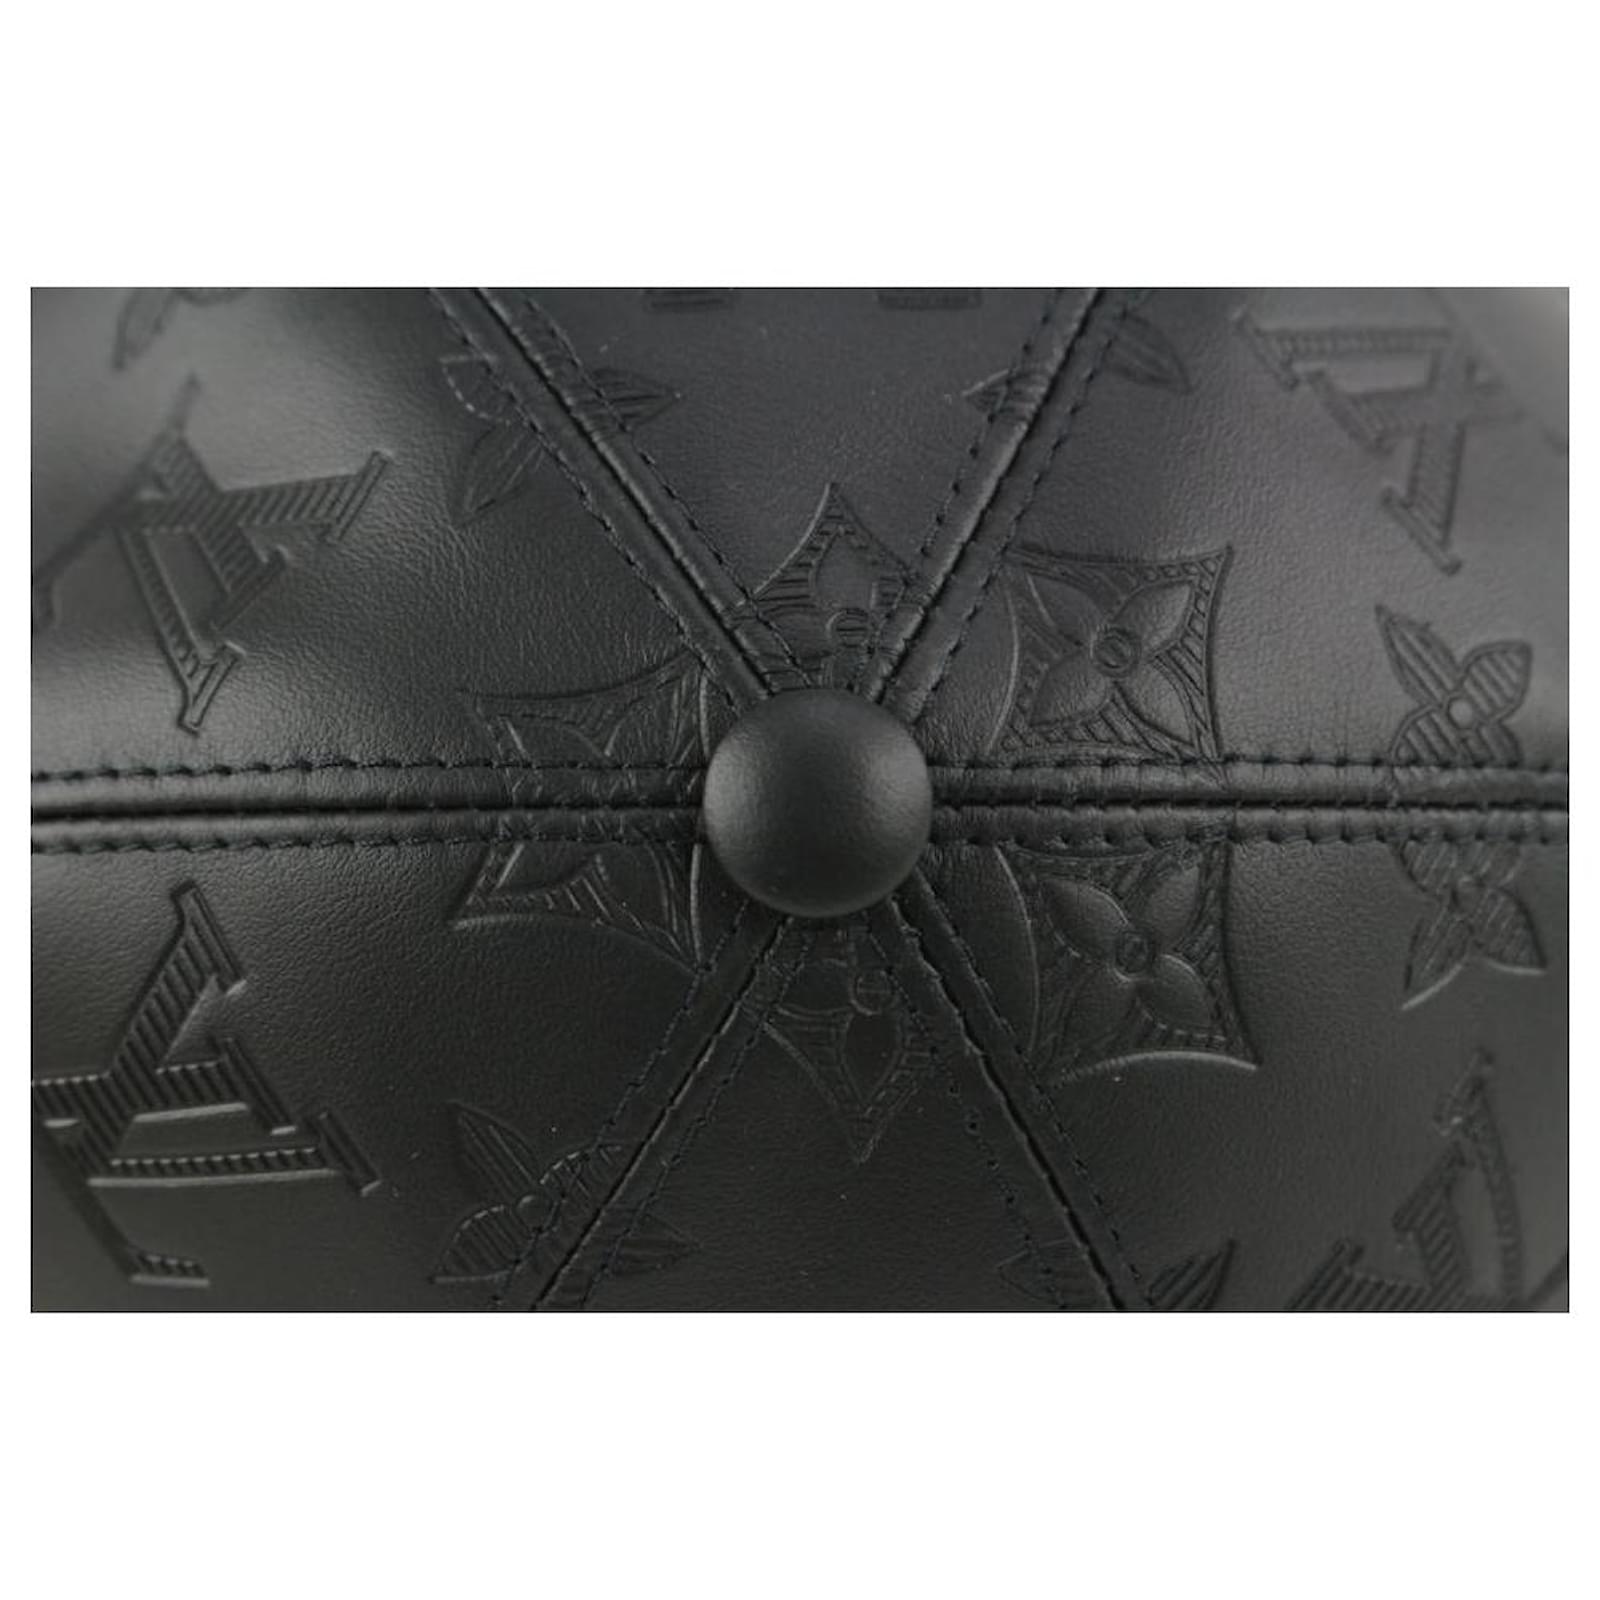 Shop Louis Vuitton Monogram shadow cap (M76580) by Sincerity_m639